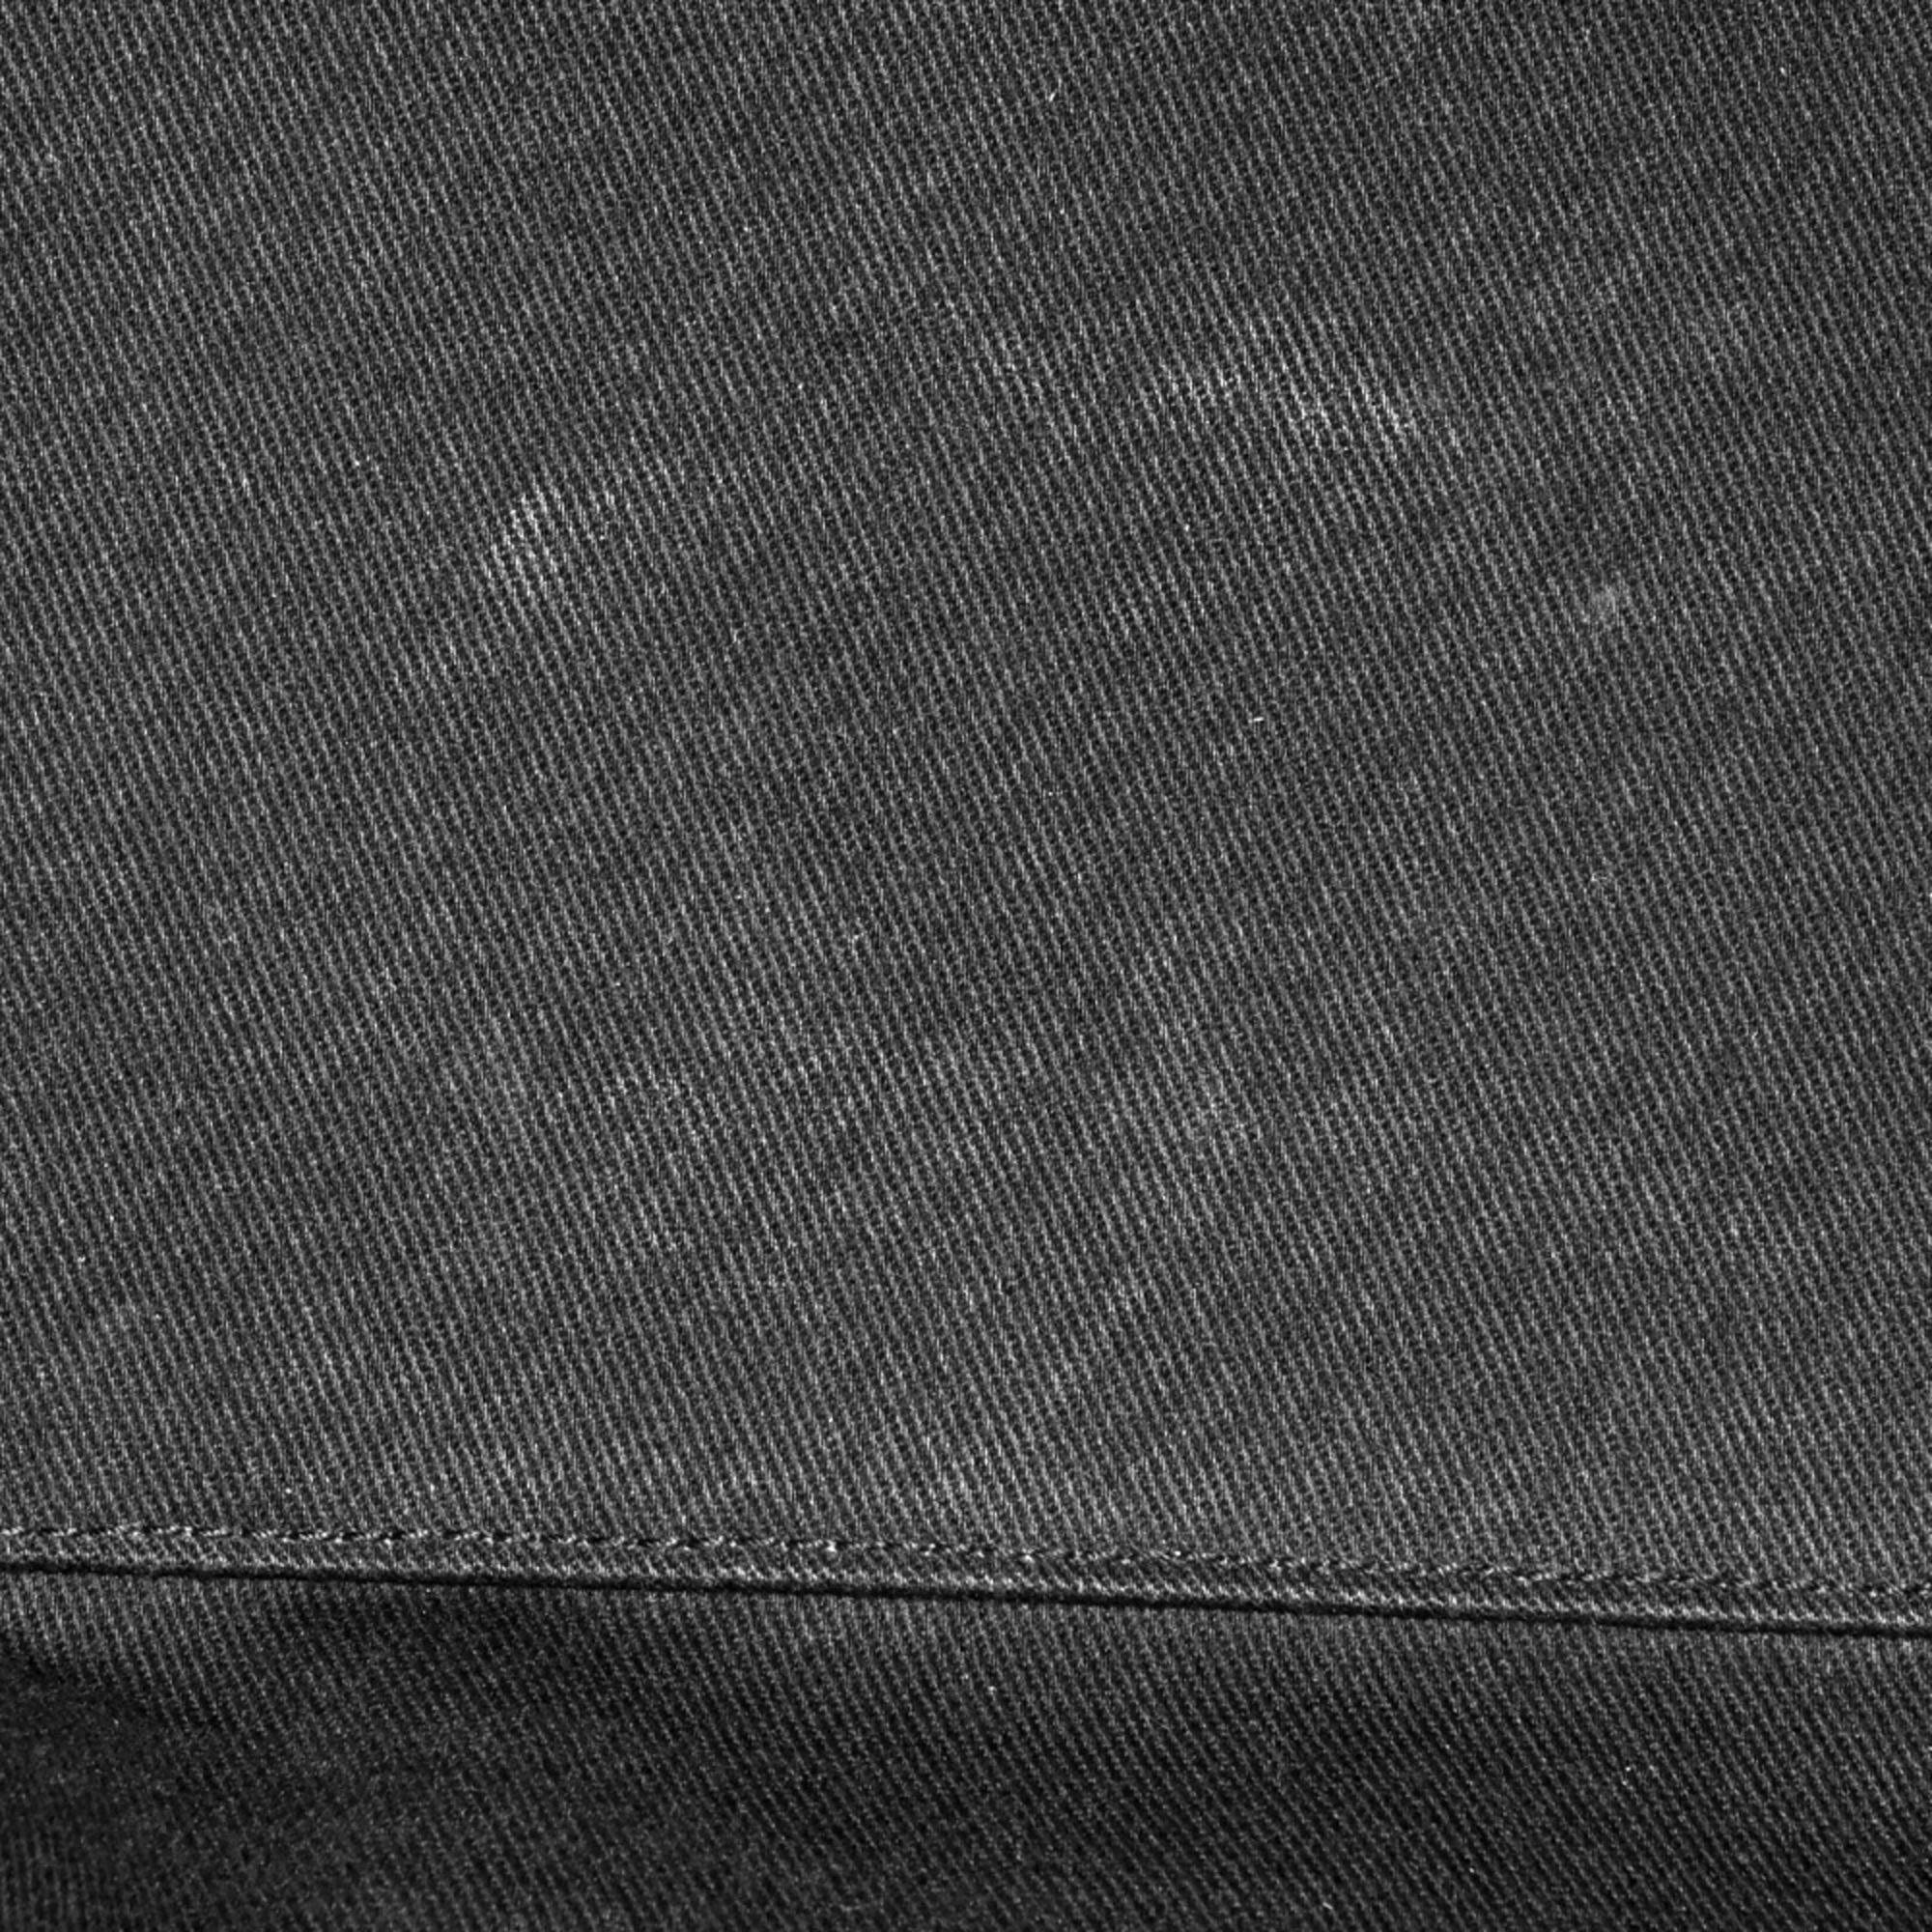 Saint Laurent SAINT LAURENT 48H Duffle Bag Sac de Jour Souple Shoulder Grained Leather 480584 Black Handbag ITJ1Y5LPUTKL